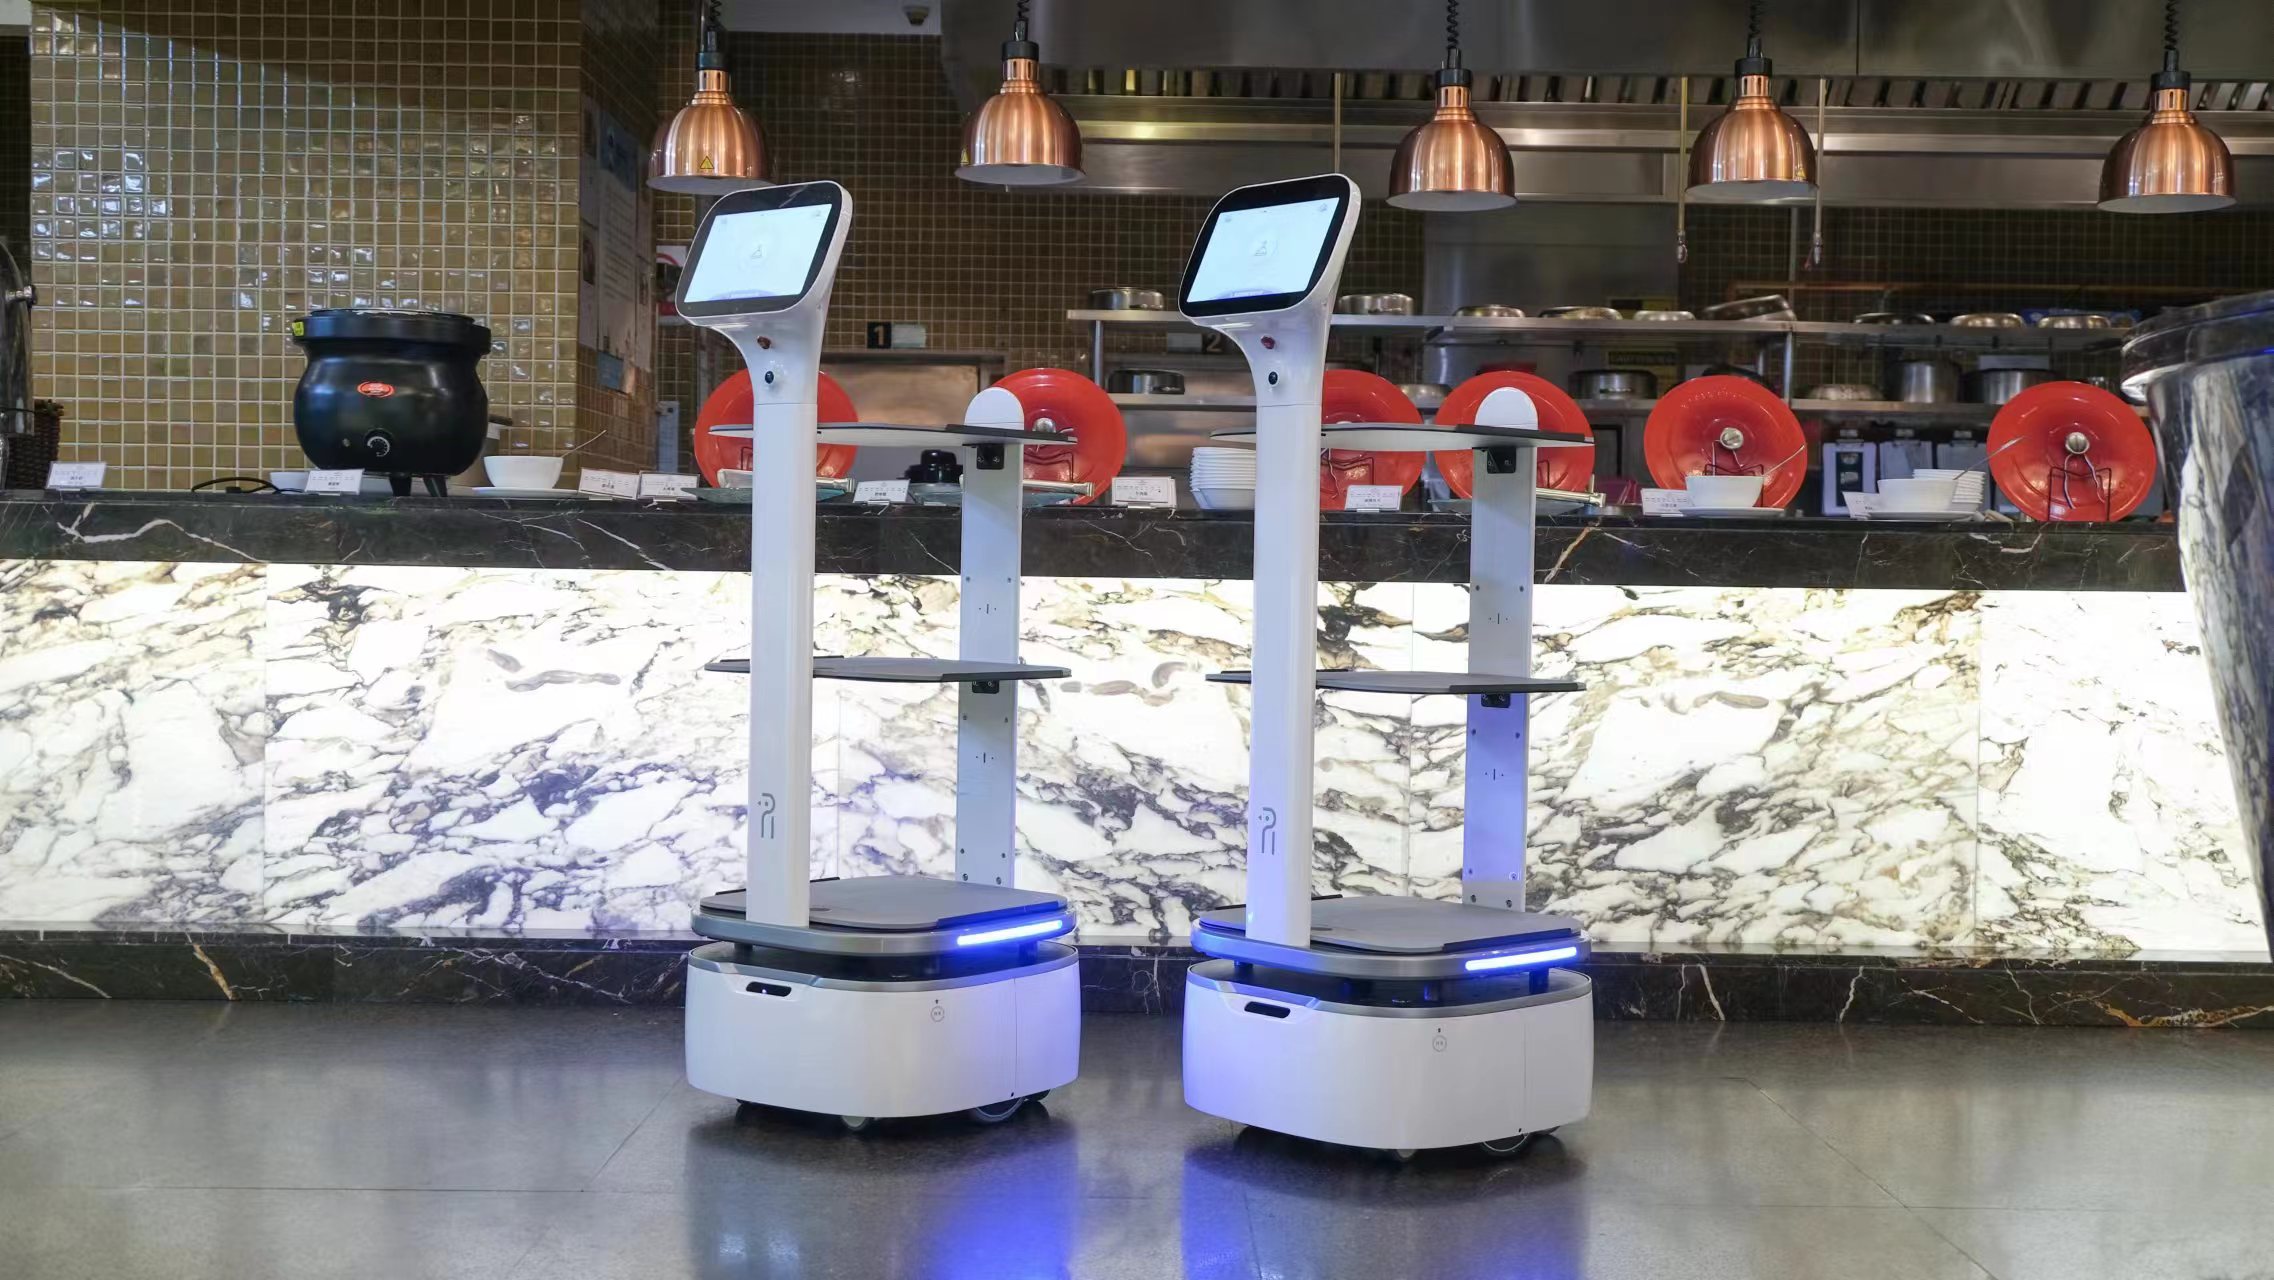 嘉峪关拉面店机器人图片XHS-JQR新瀚生餐厅酒店带路传菜机器人智能巡航机器人送餐机器人批发图片价格视频批发价格生产